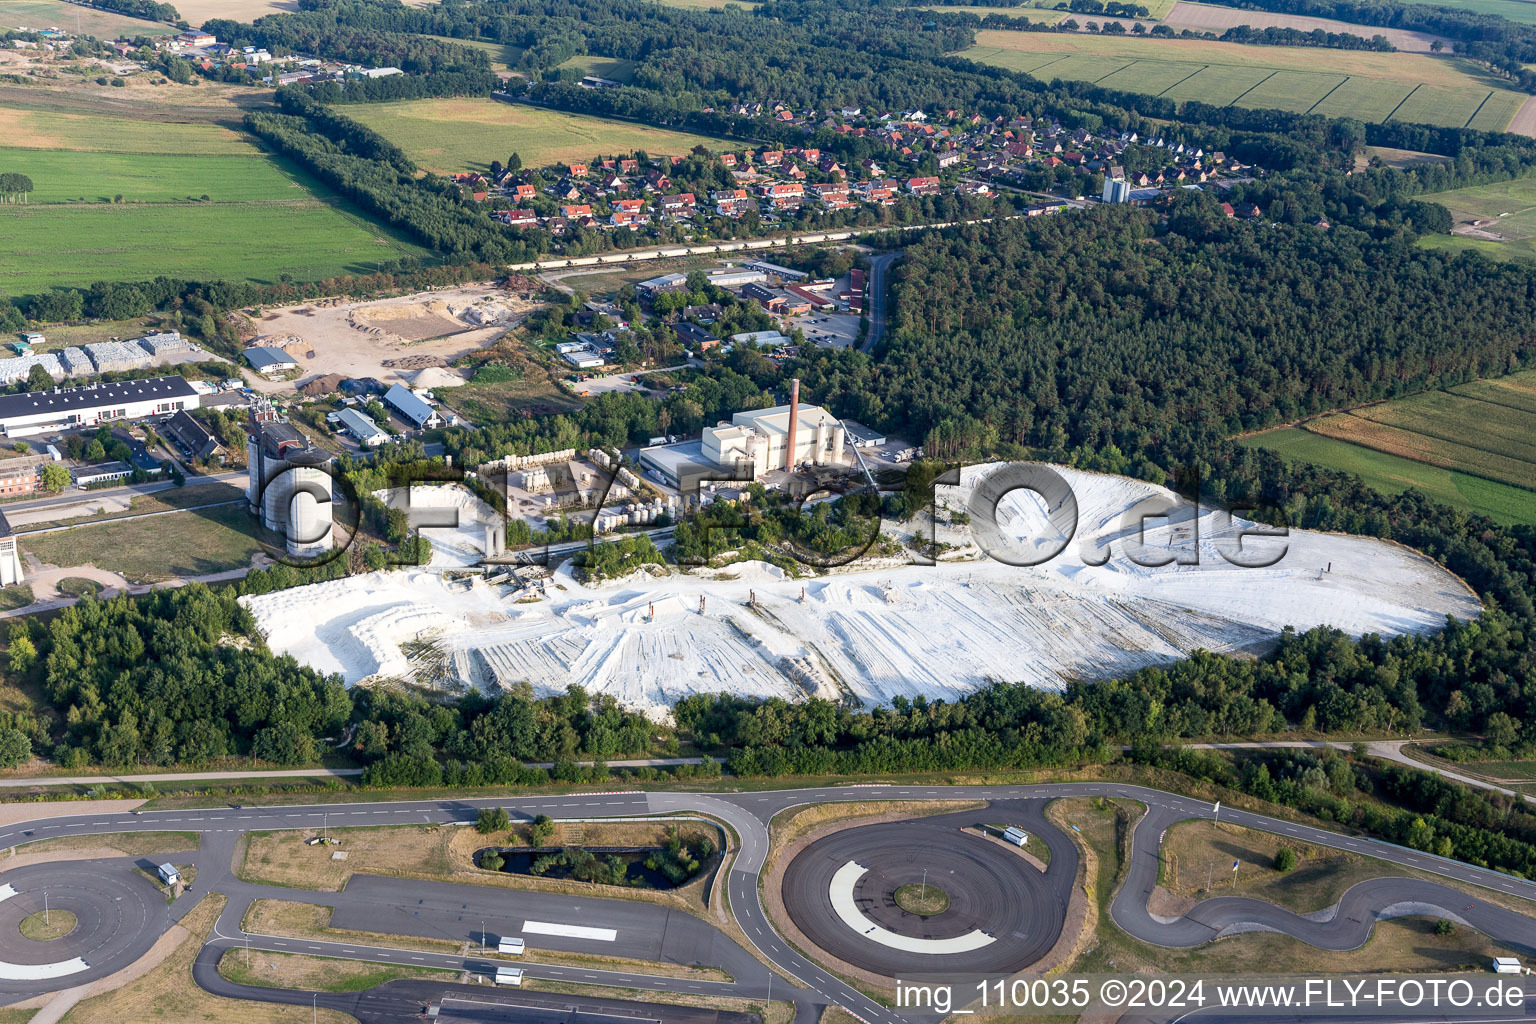 Voies asphaltées du centre de sécurité routière ADAC Hansa devant les décharges de gypse blanc de Gipswerk Embsen GmbH à Embsen dans le département Basse-Saxe, Allemagne d'en haut